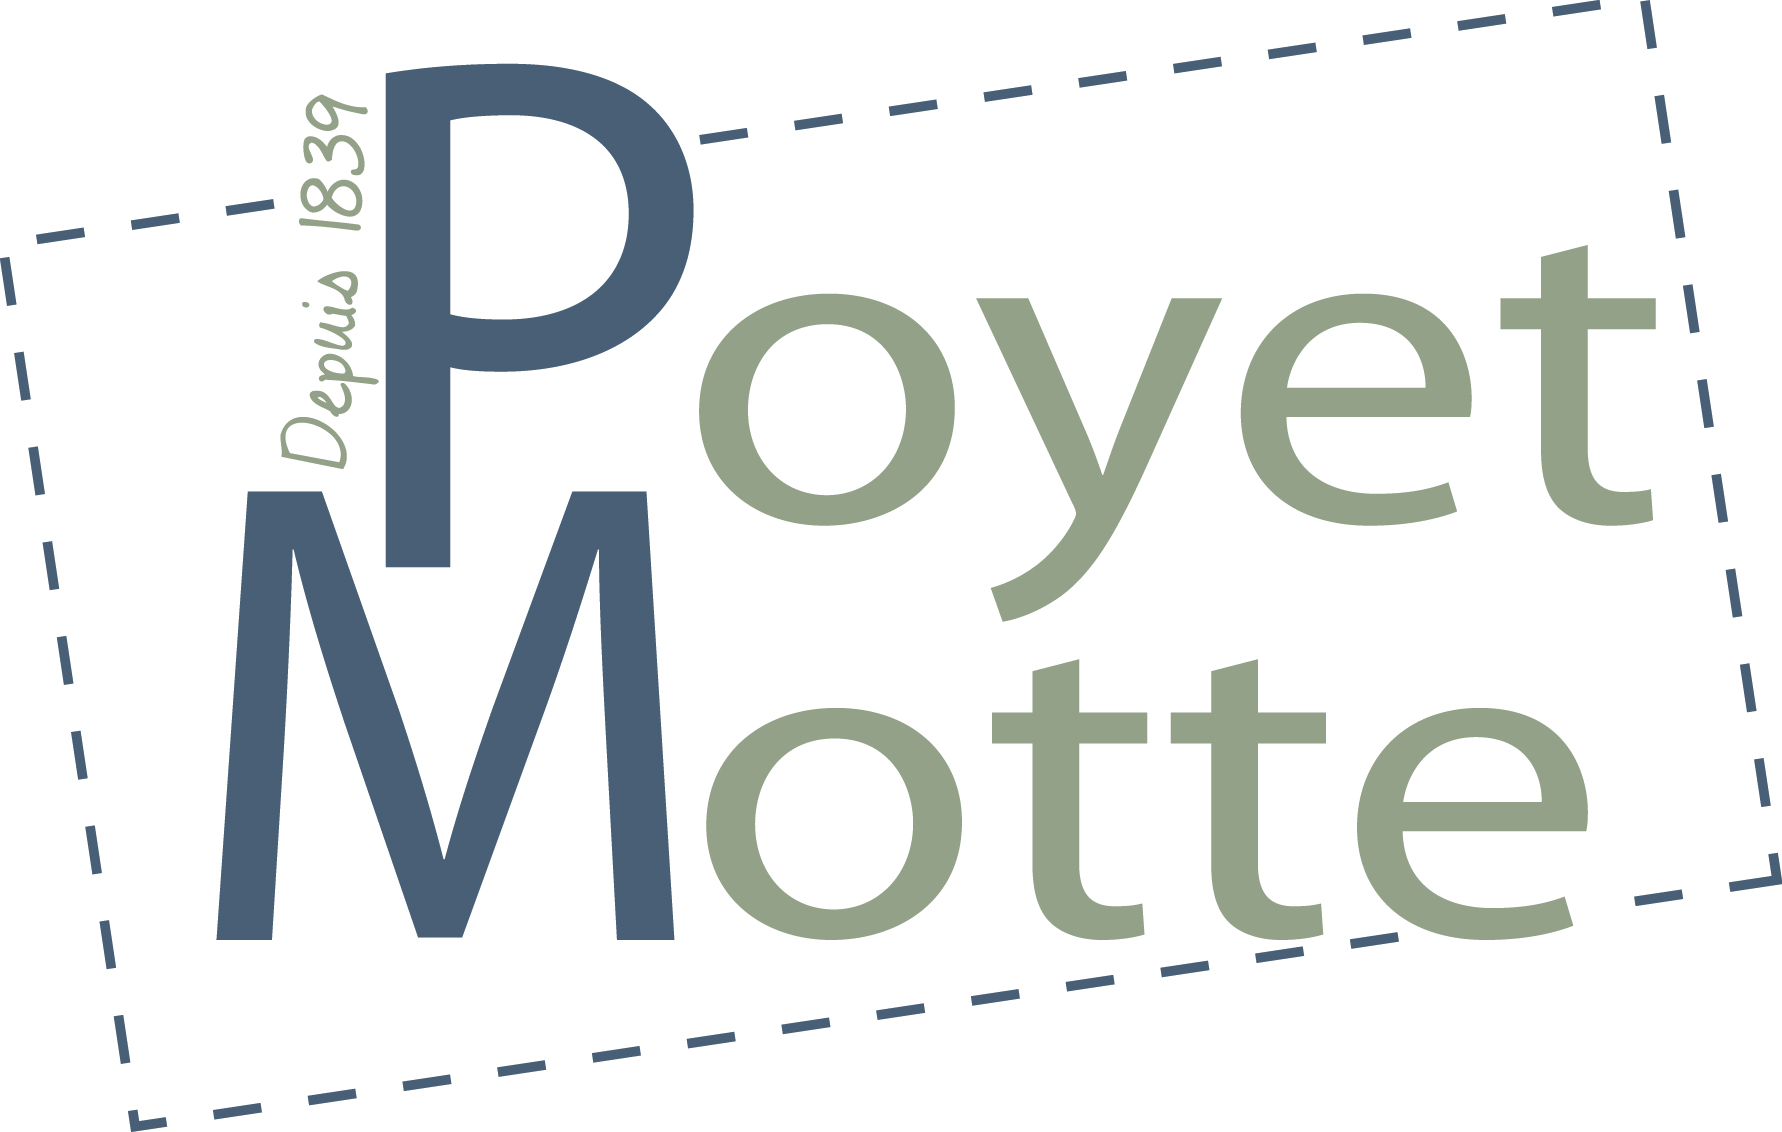 Poyet Motte Cofreet entretien textile etiquette